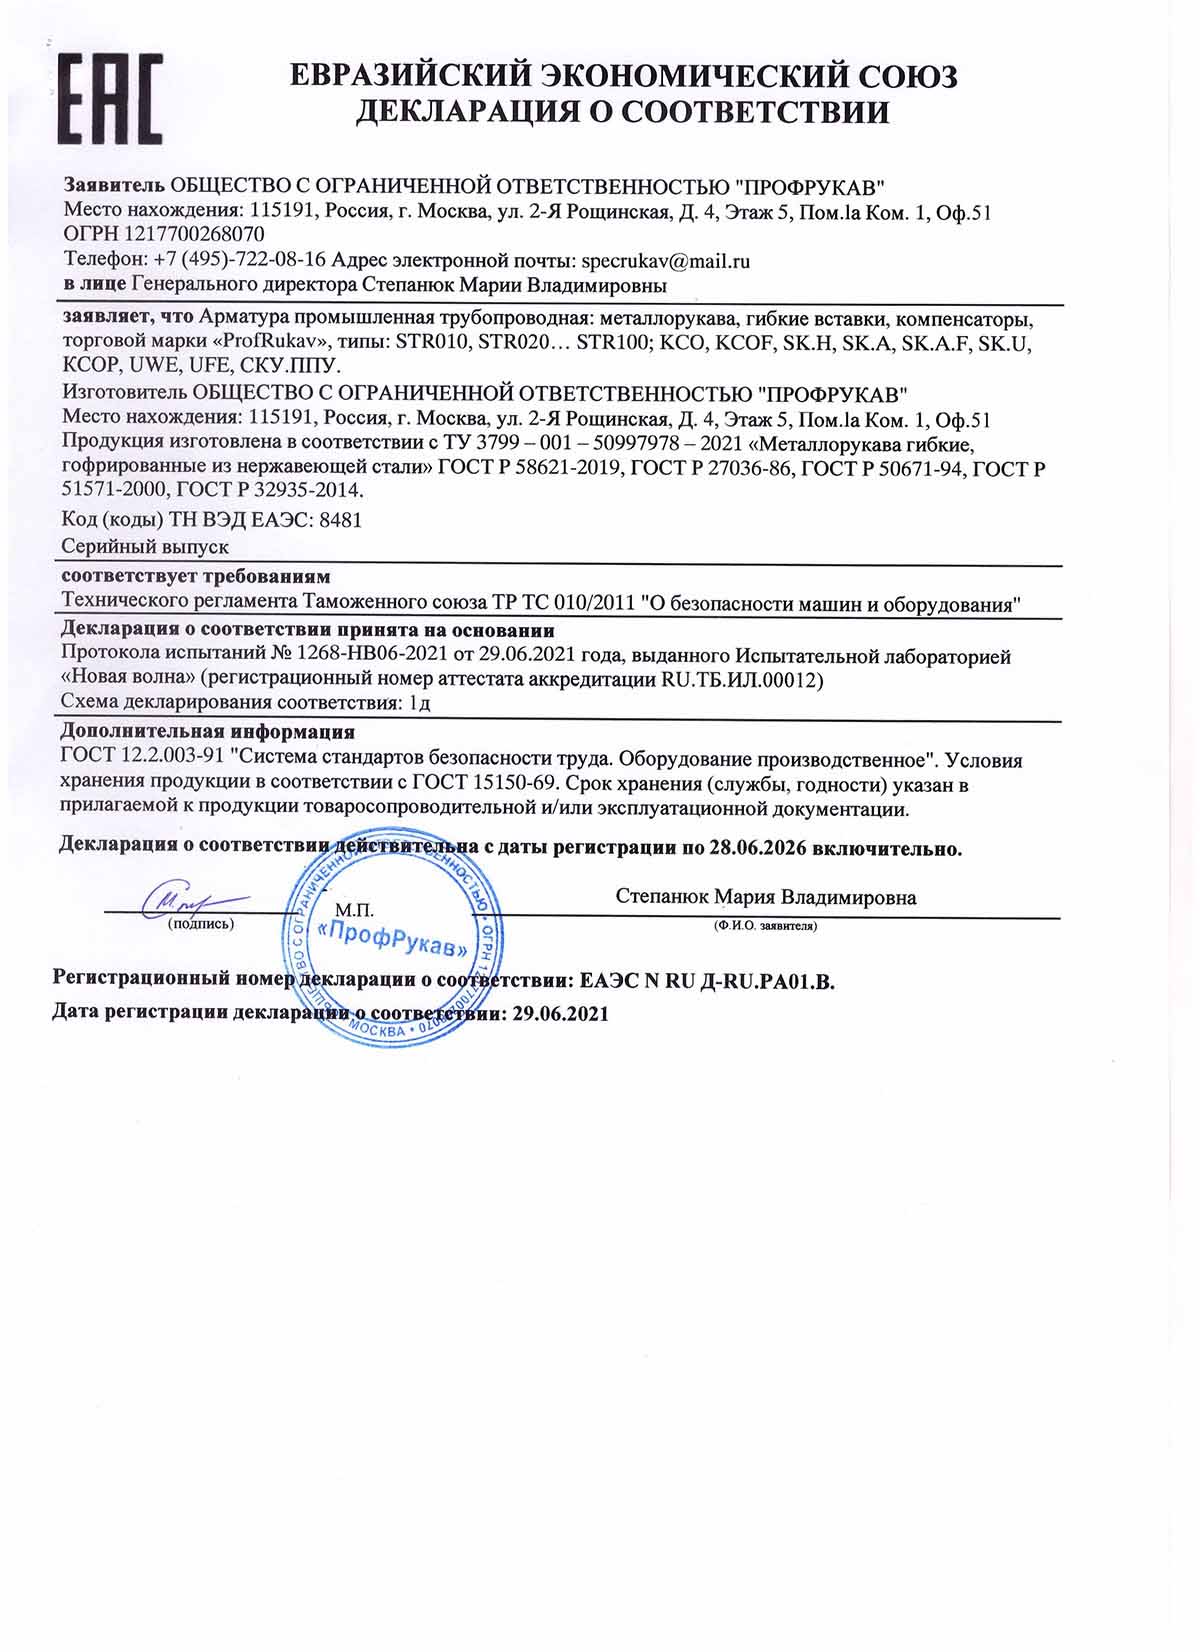 Сертификат соответствия СтальФлекс 1